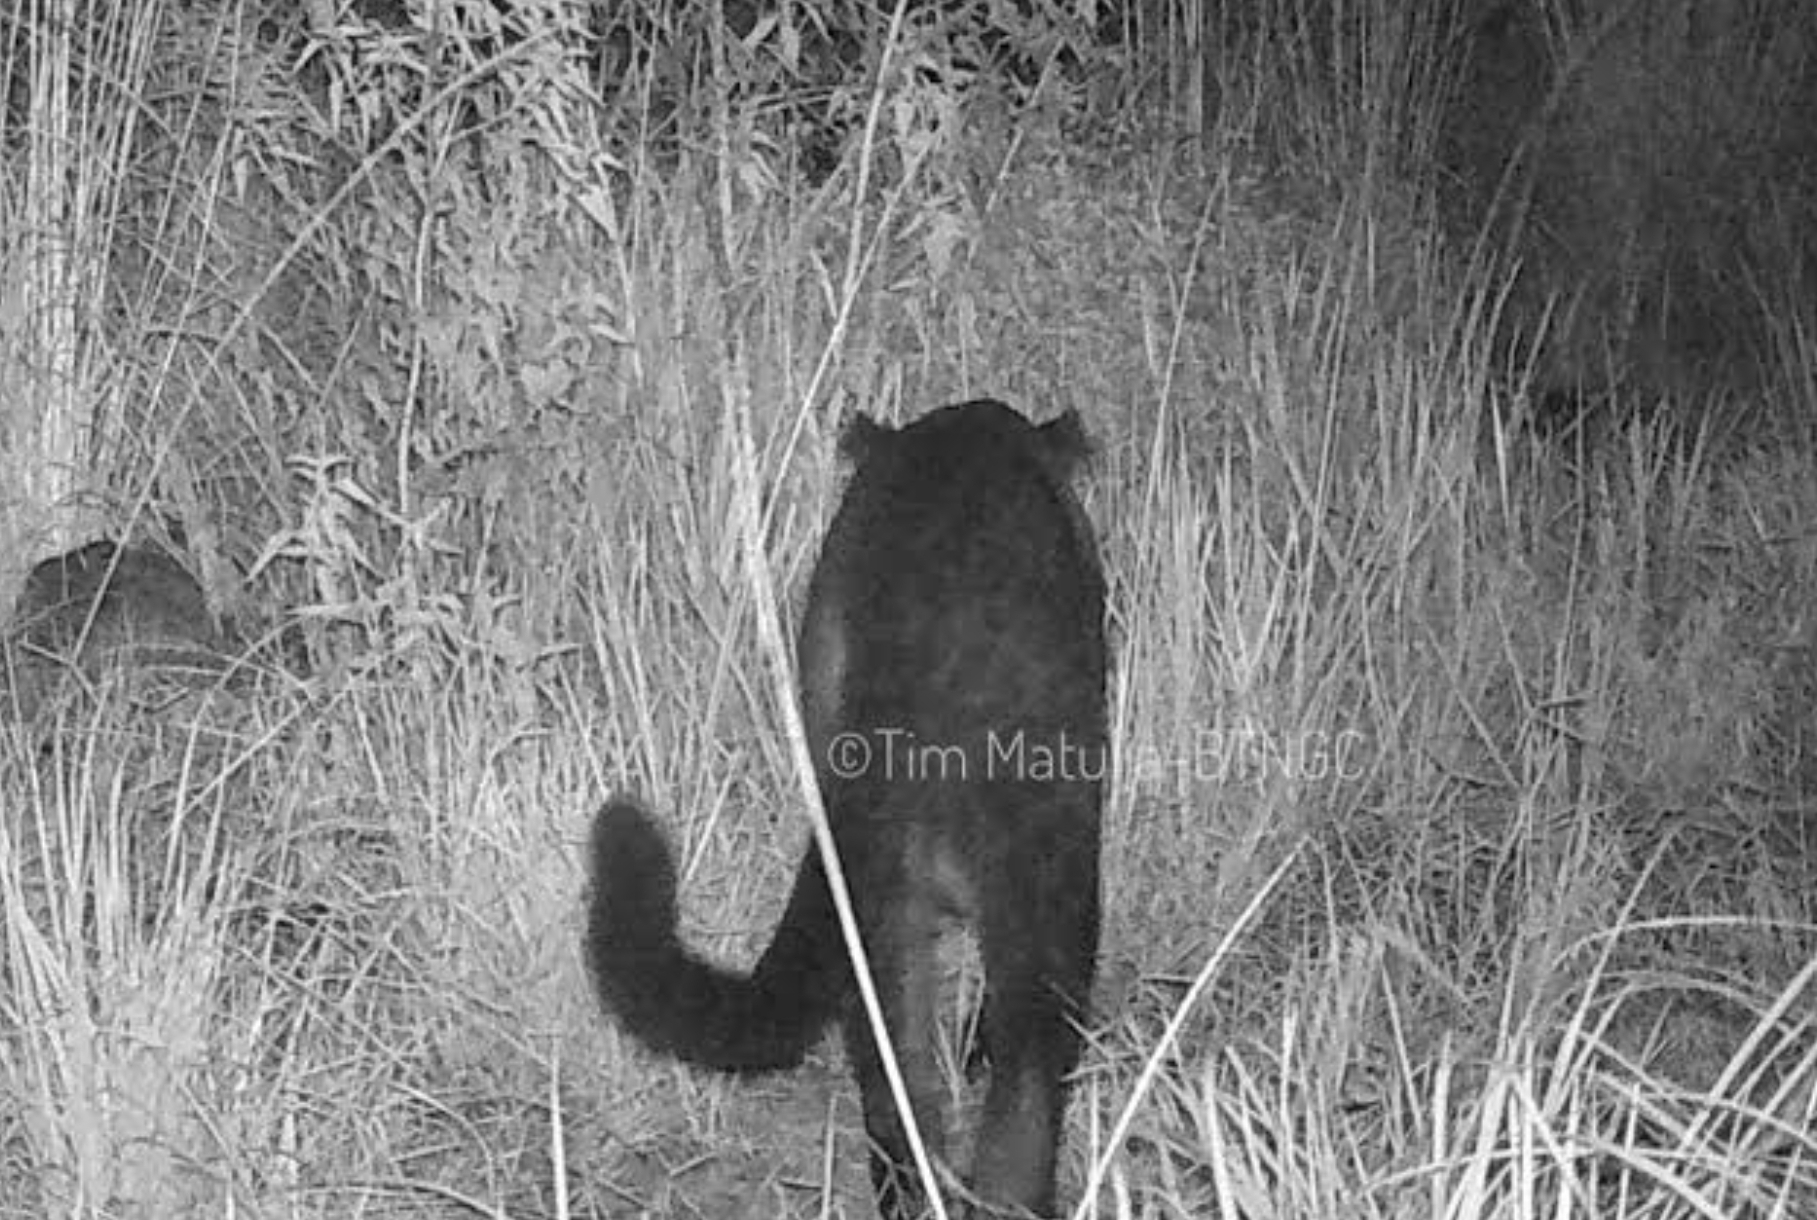 Kucing Besar dari Pulau Jawa Terancam Punah, Justru di Gunung Ciremai Ada Indikasi Penambahan 3 Ekor